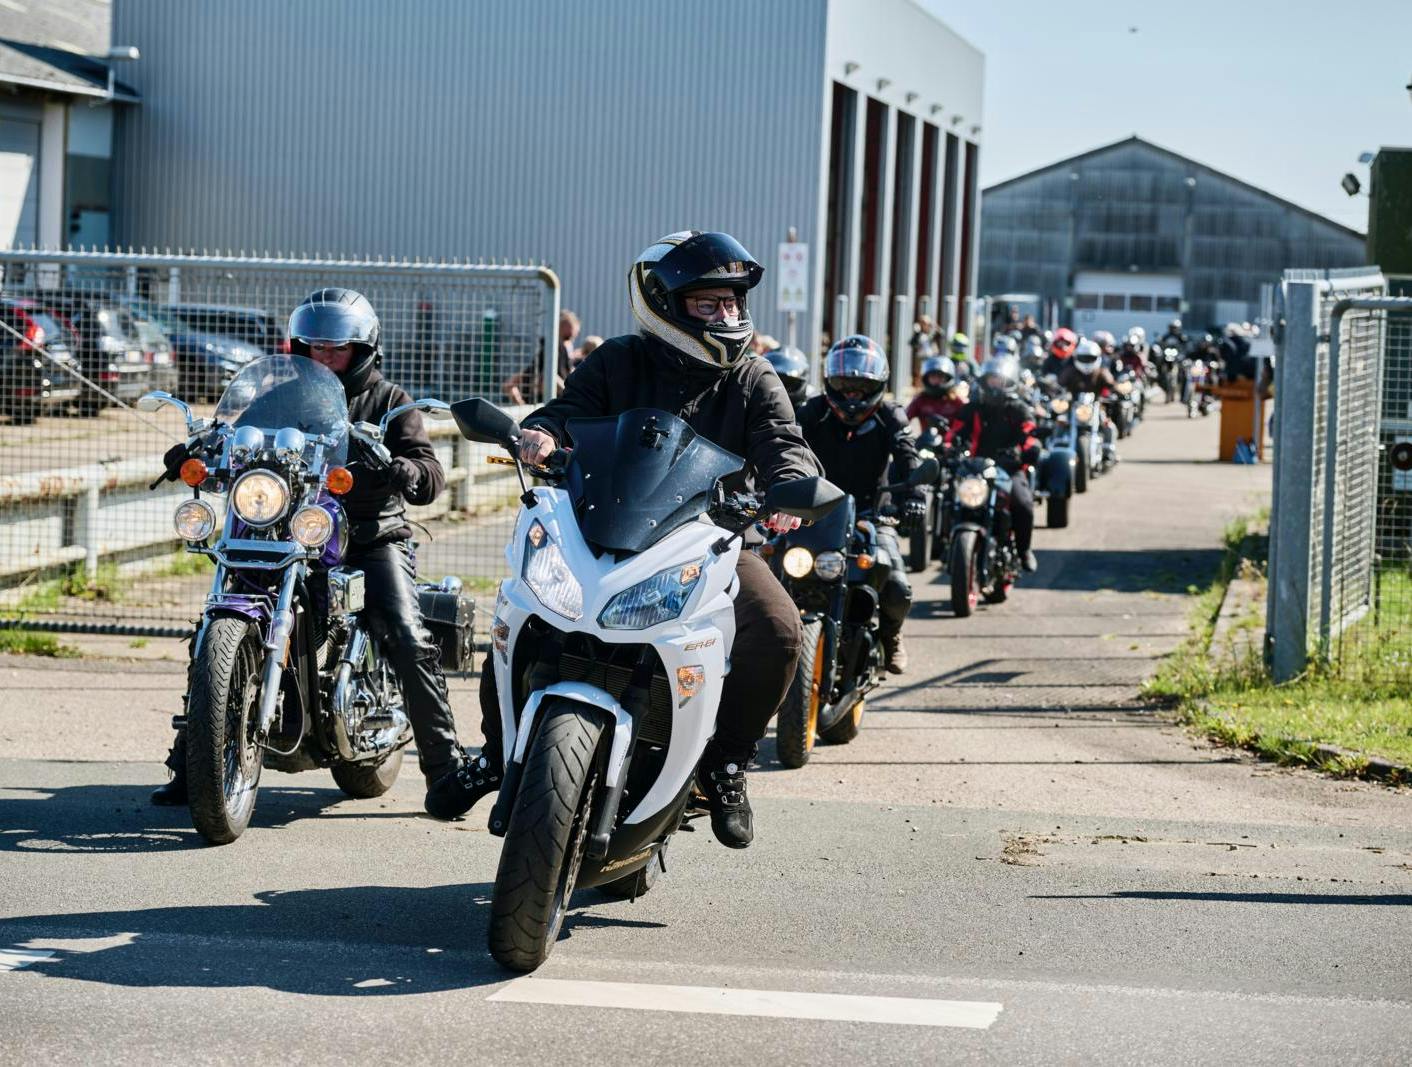 Familie Journal har besøgt Gasolina, landets første motorcykelfestival for kvinder, for at forstå, hvordan hestekræfter og benzin også kan fremme feminine fællesskaber.